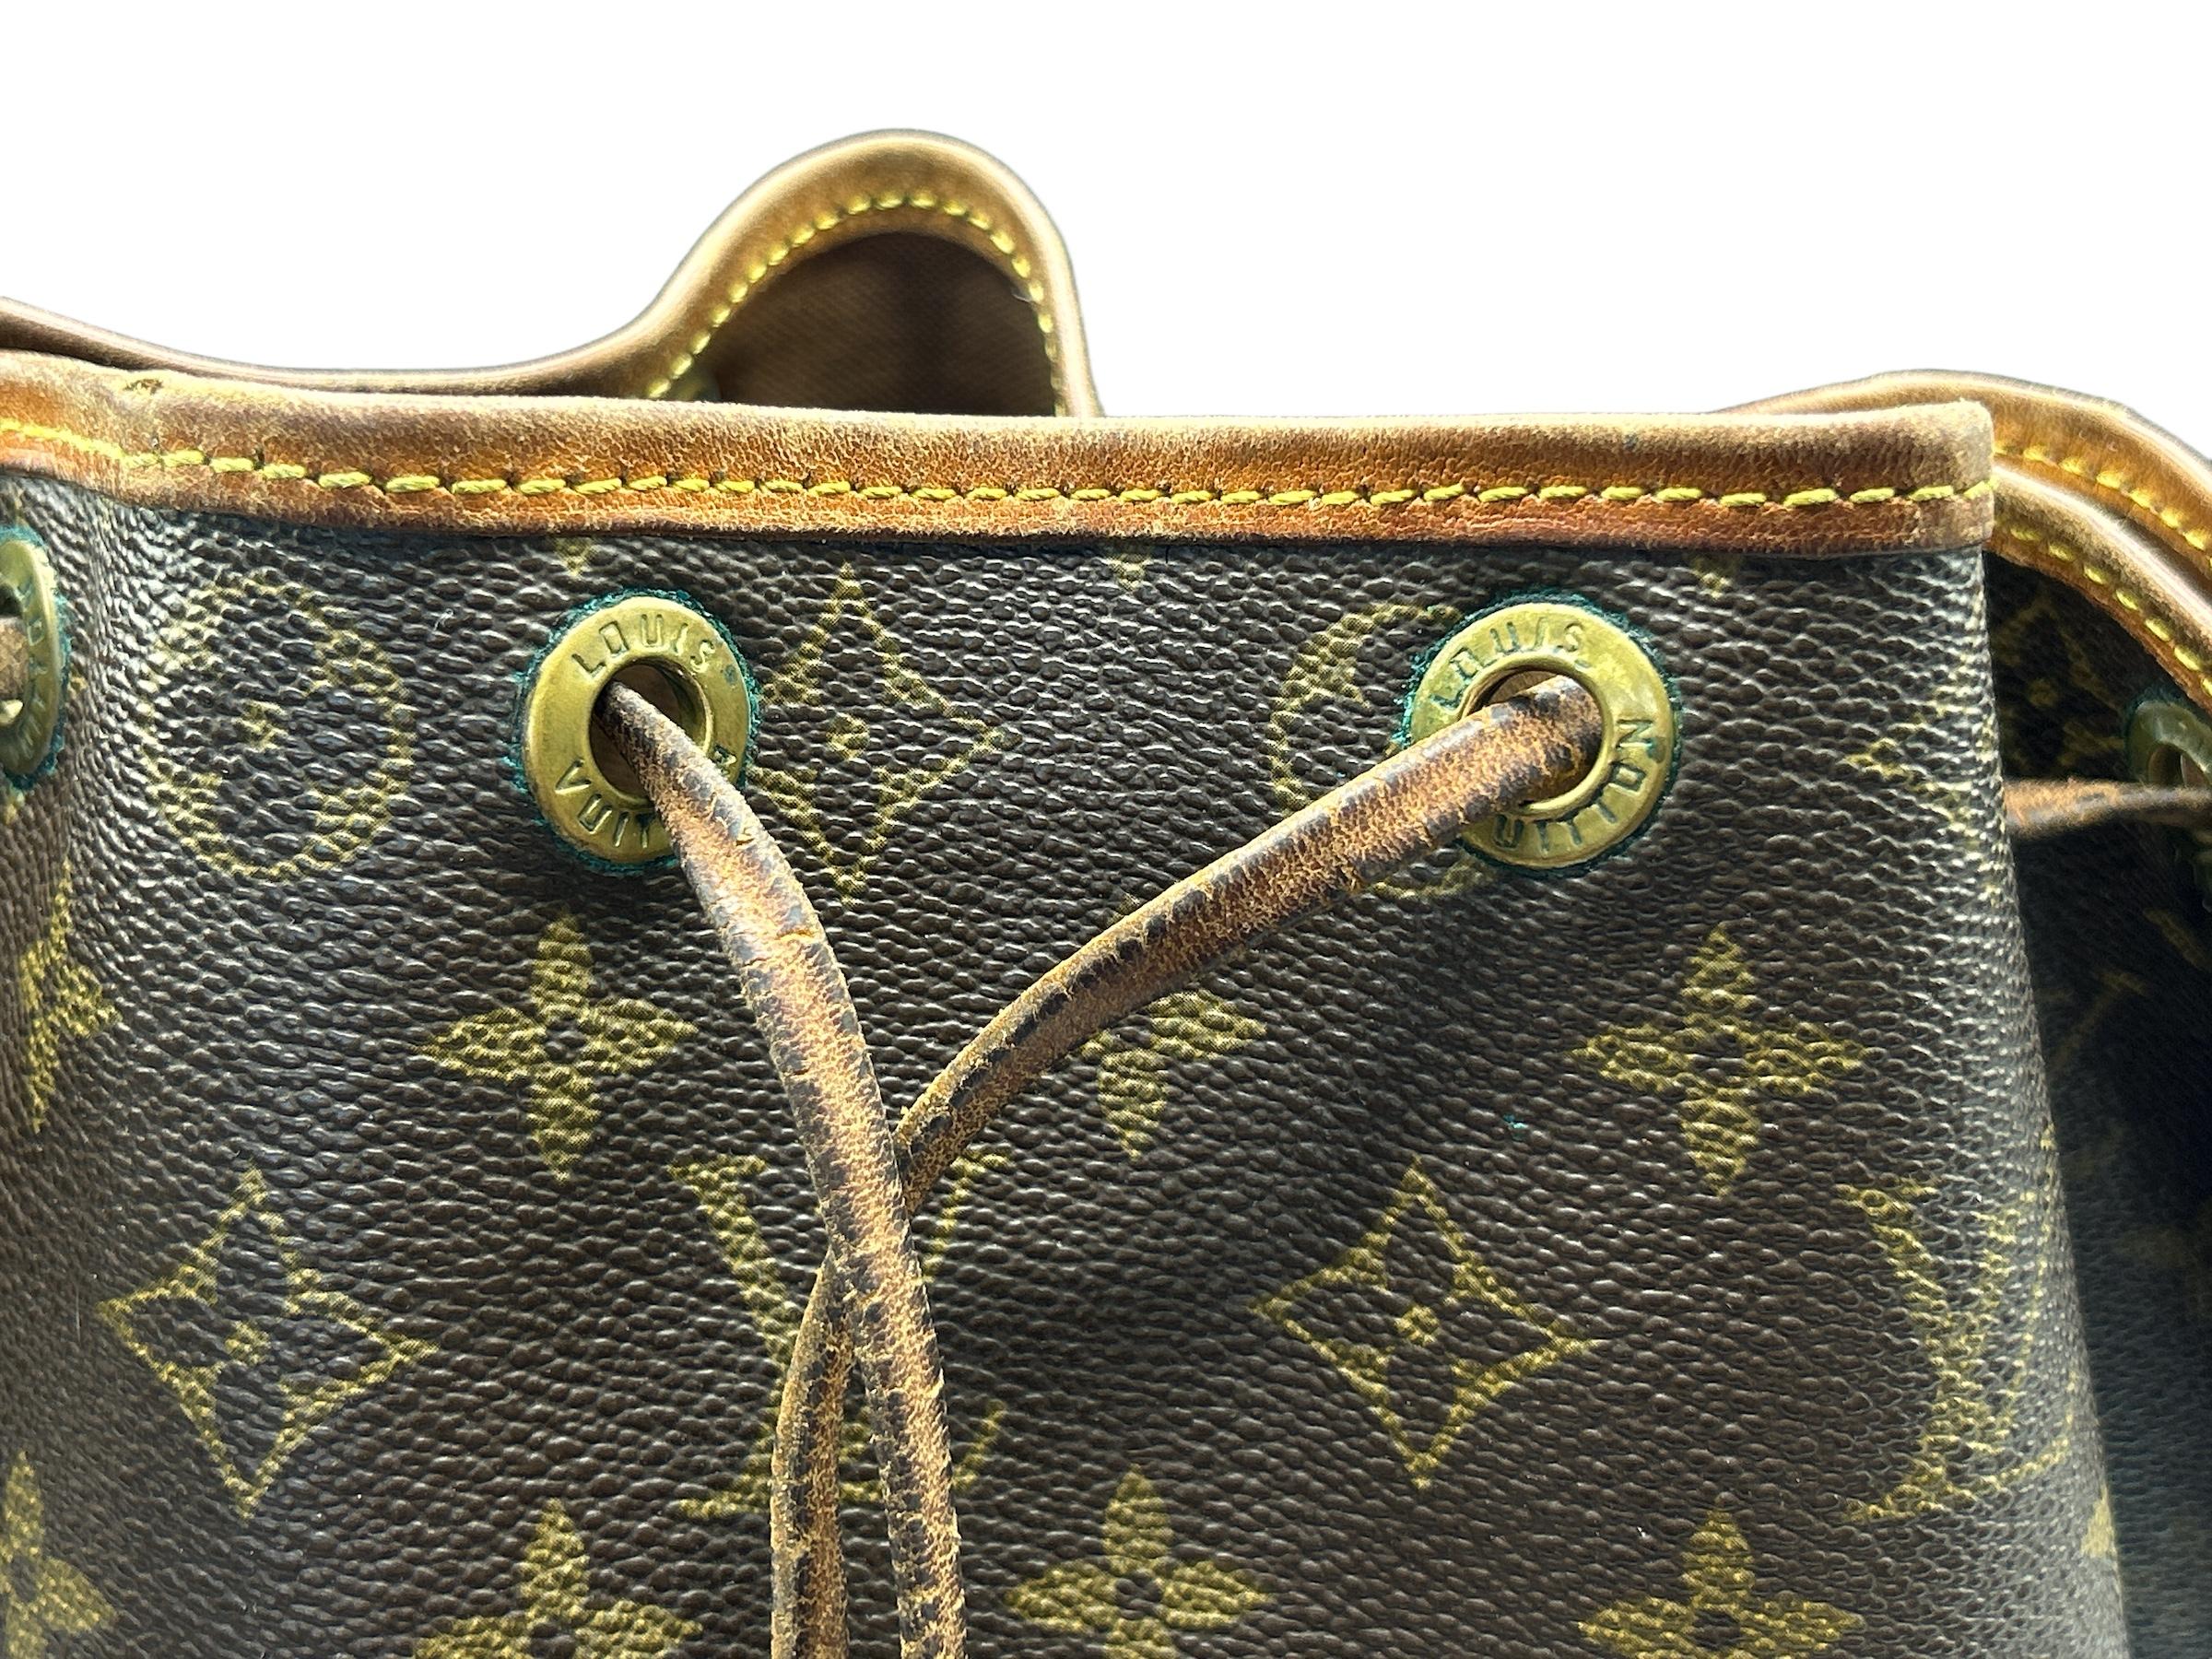 Vintage Louis Vuitton purse